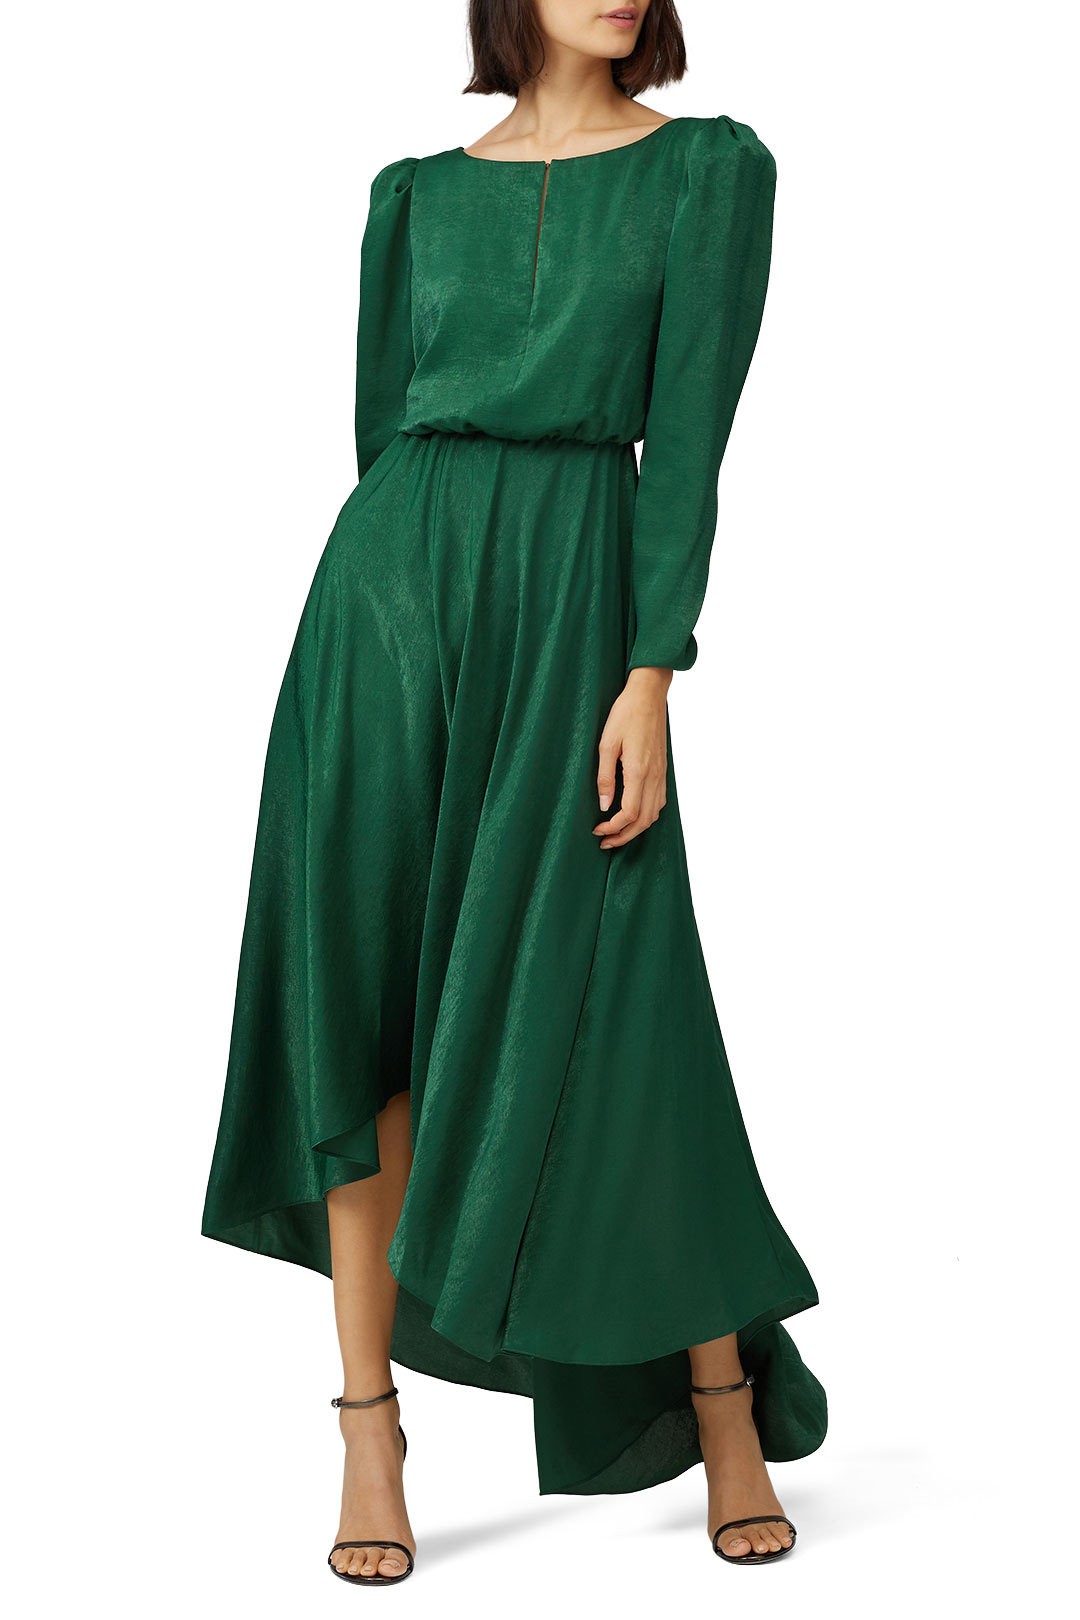 green dresses for weddings